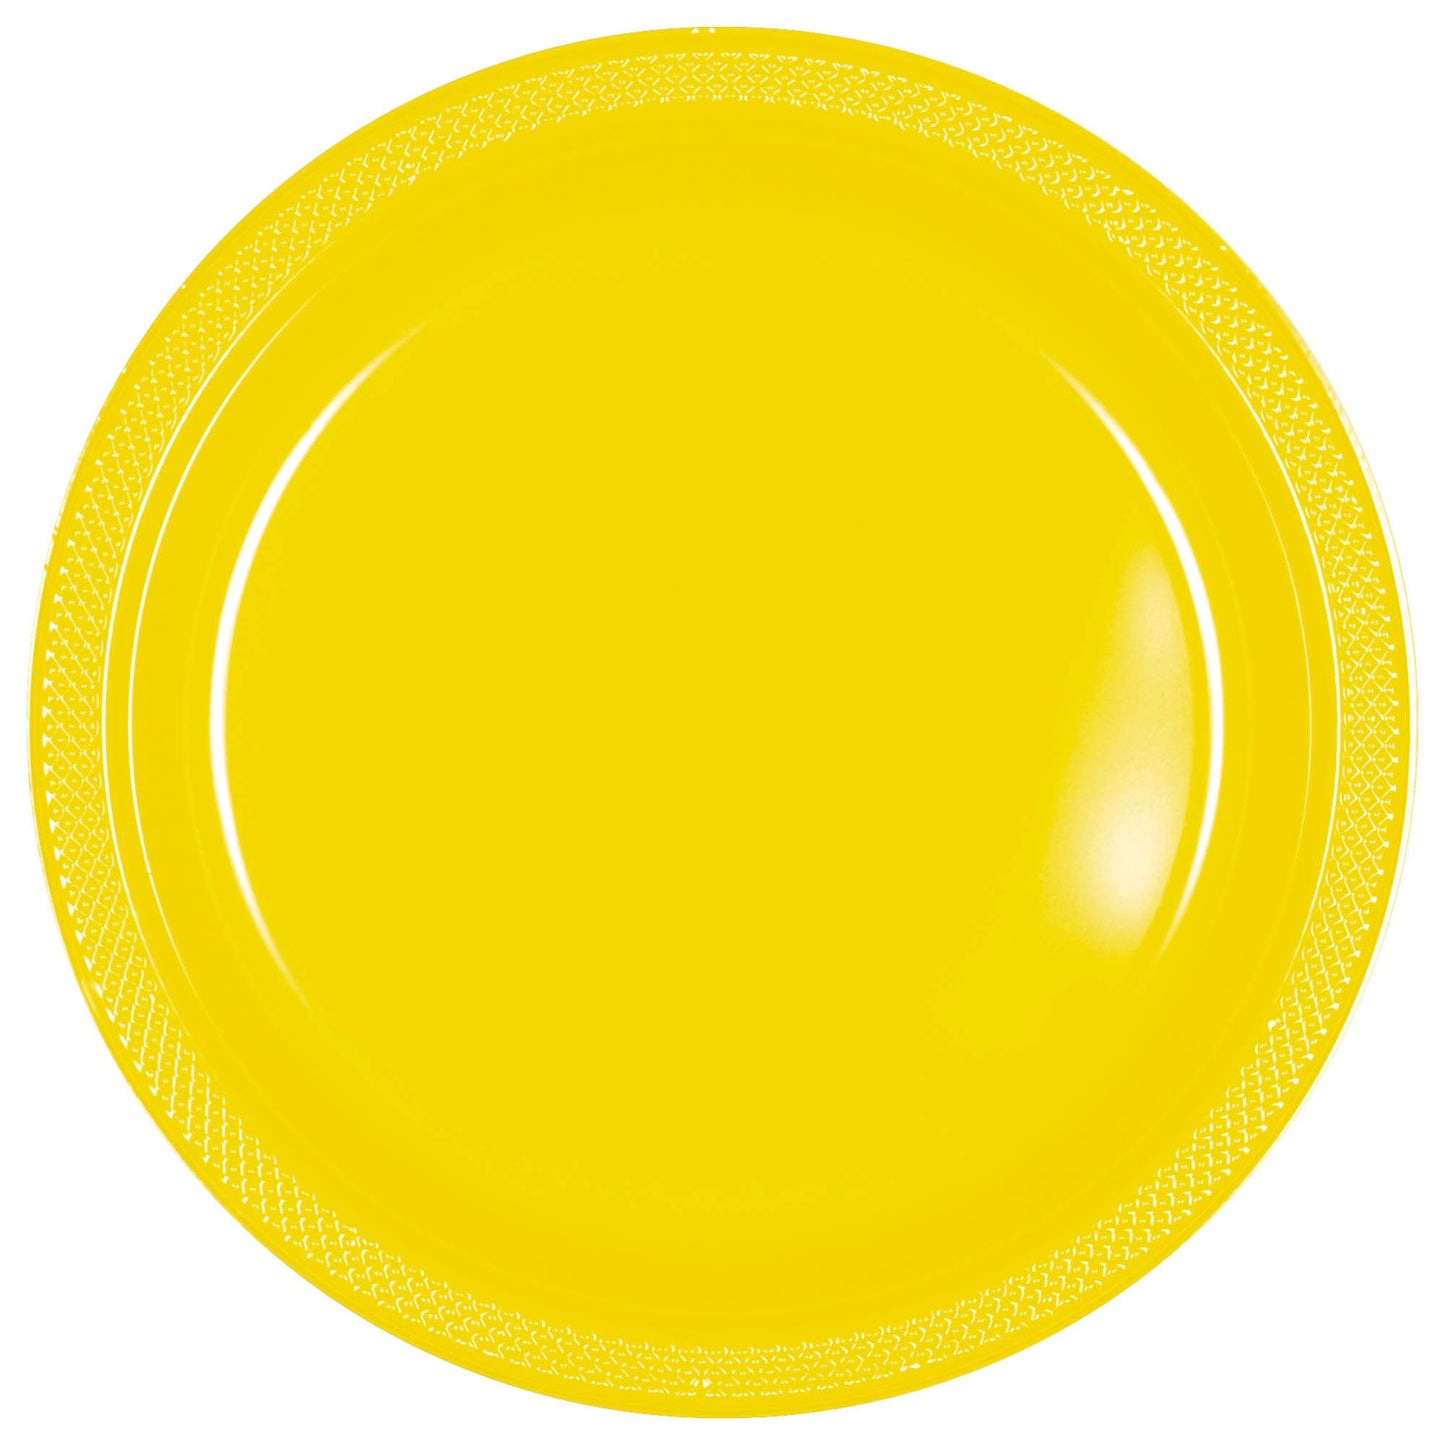 7" Plastic Plates (20ct.):